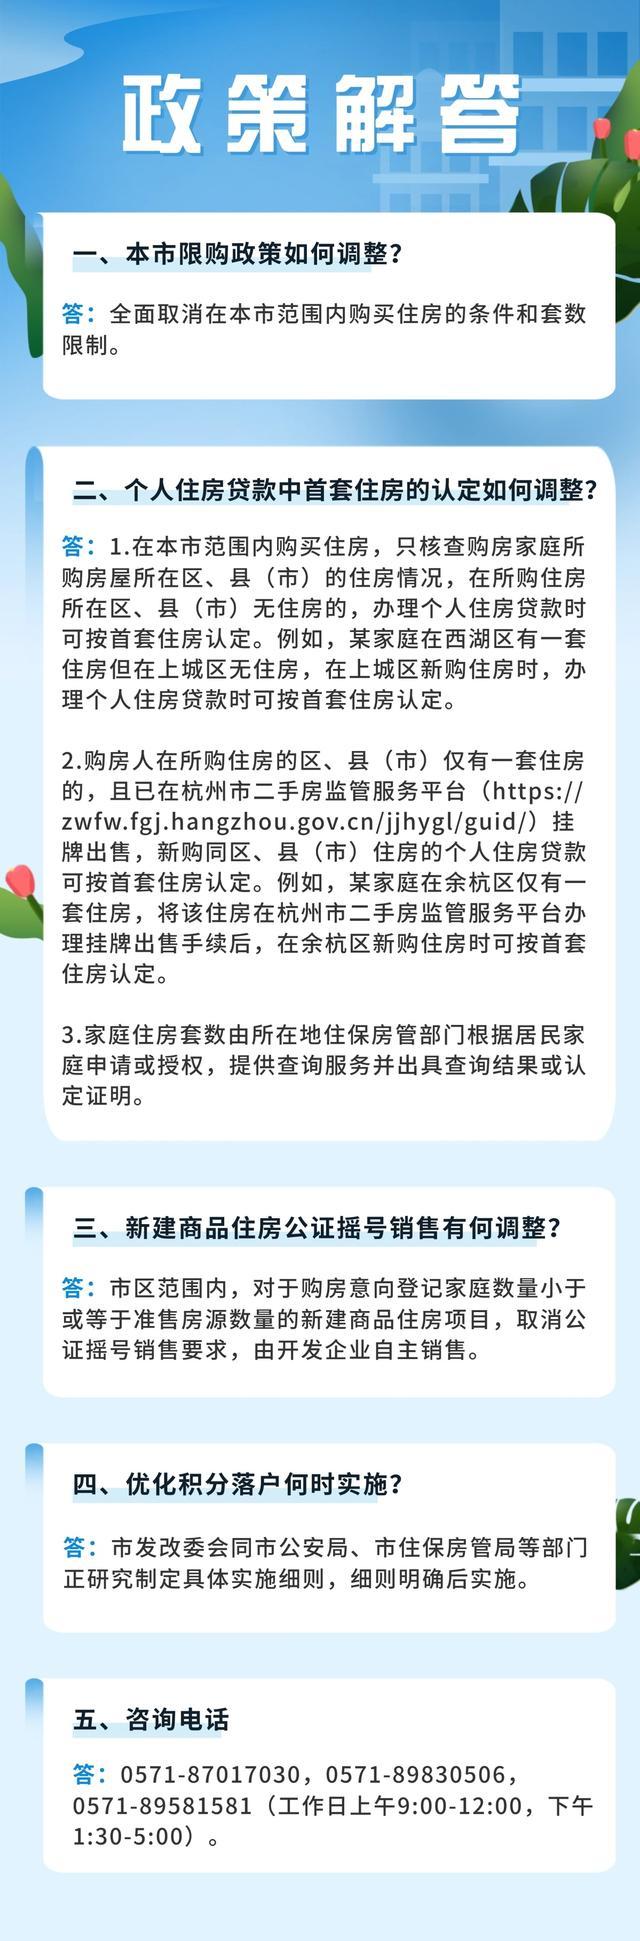 杭州市内买房不再审核购房资格